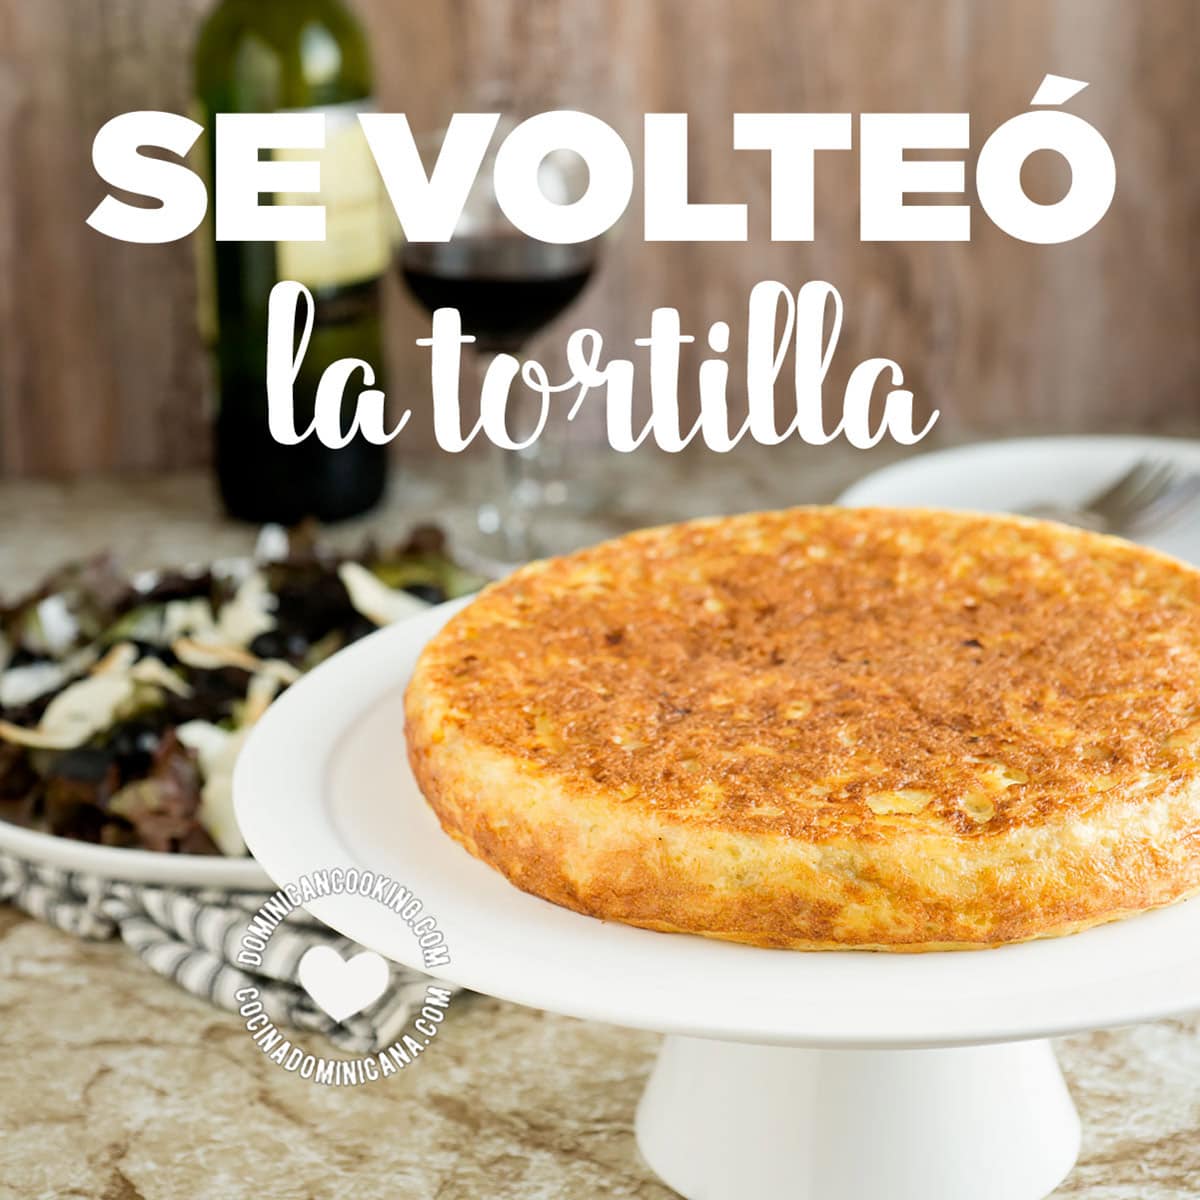 Image with text: se volteó la tortilla.